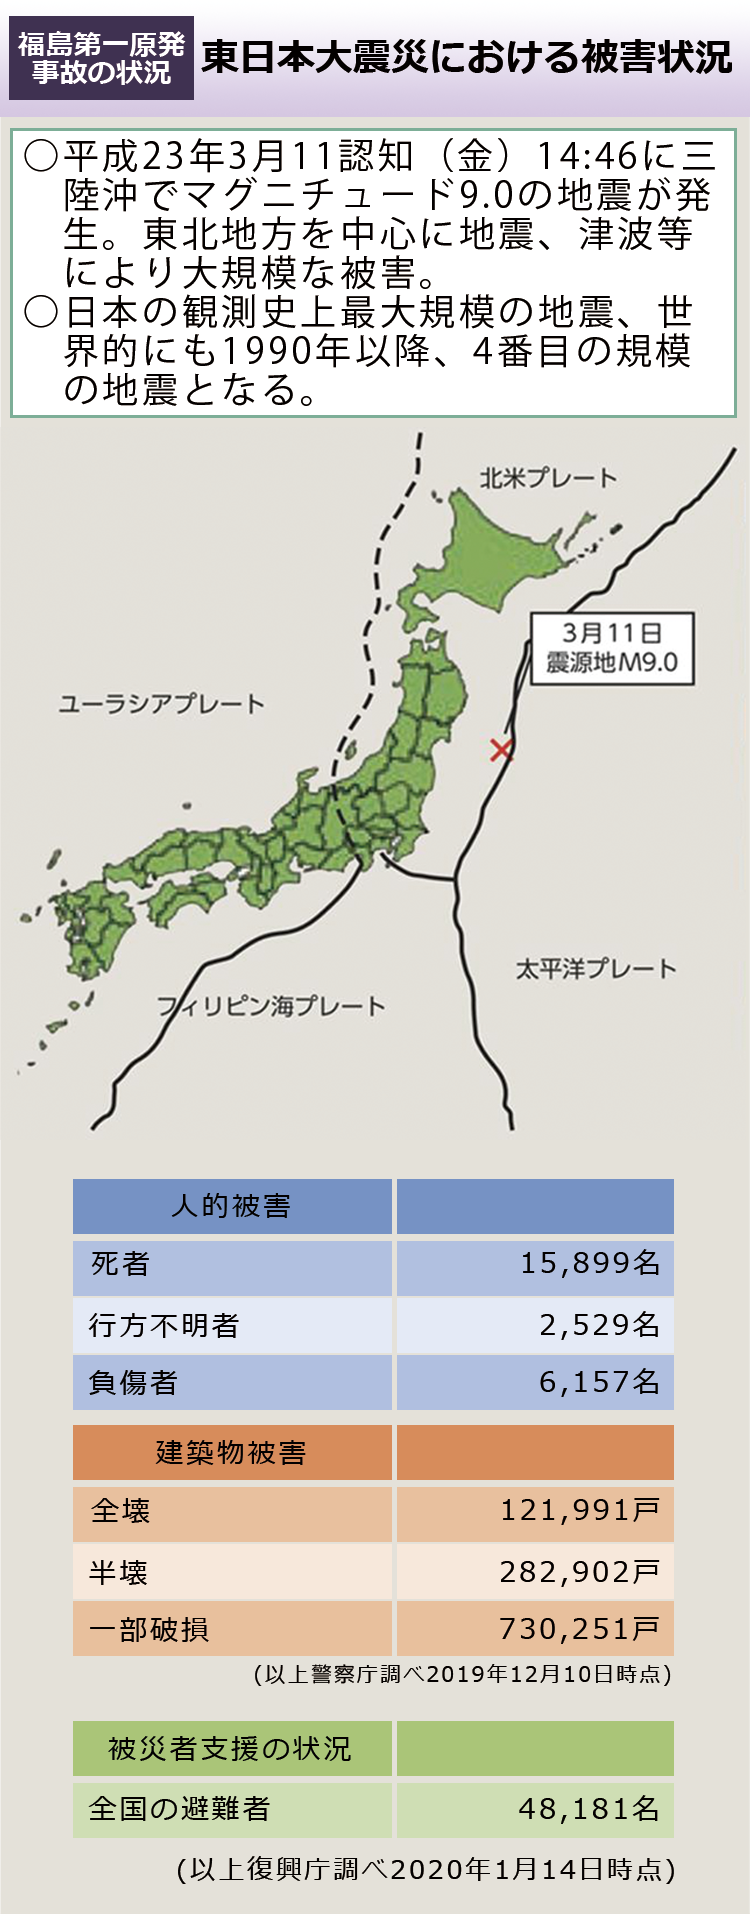 東日本 大震災 マグニチュード 震度